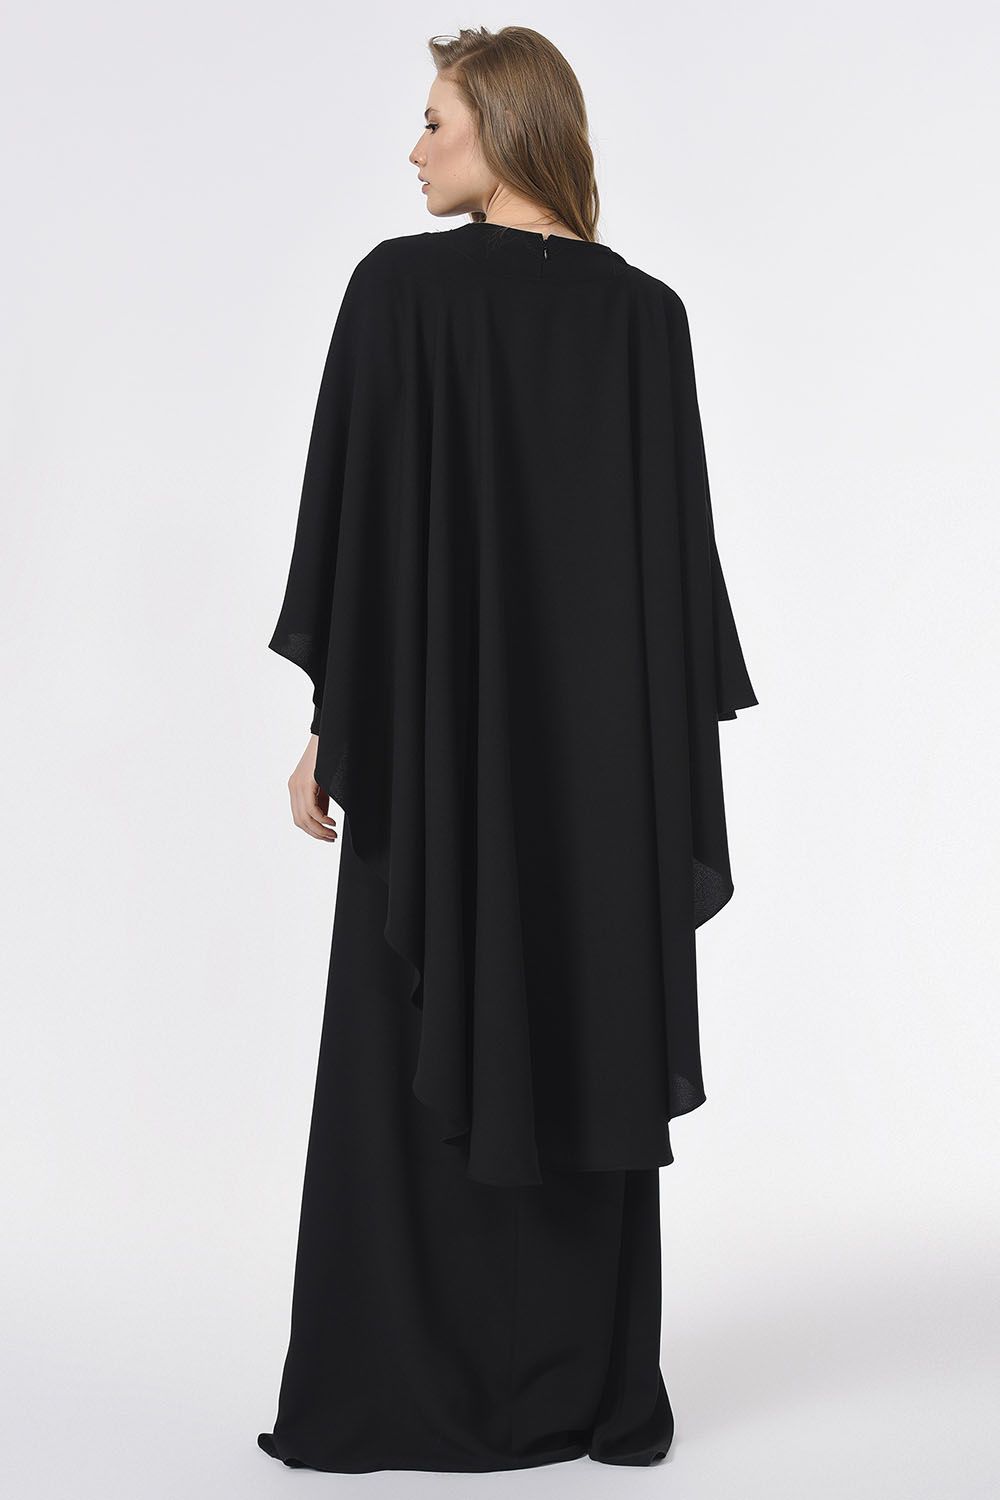 Önü Biye Detaylı Tasarım Siyah Elbise